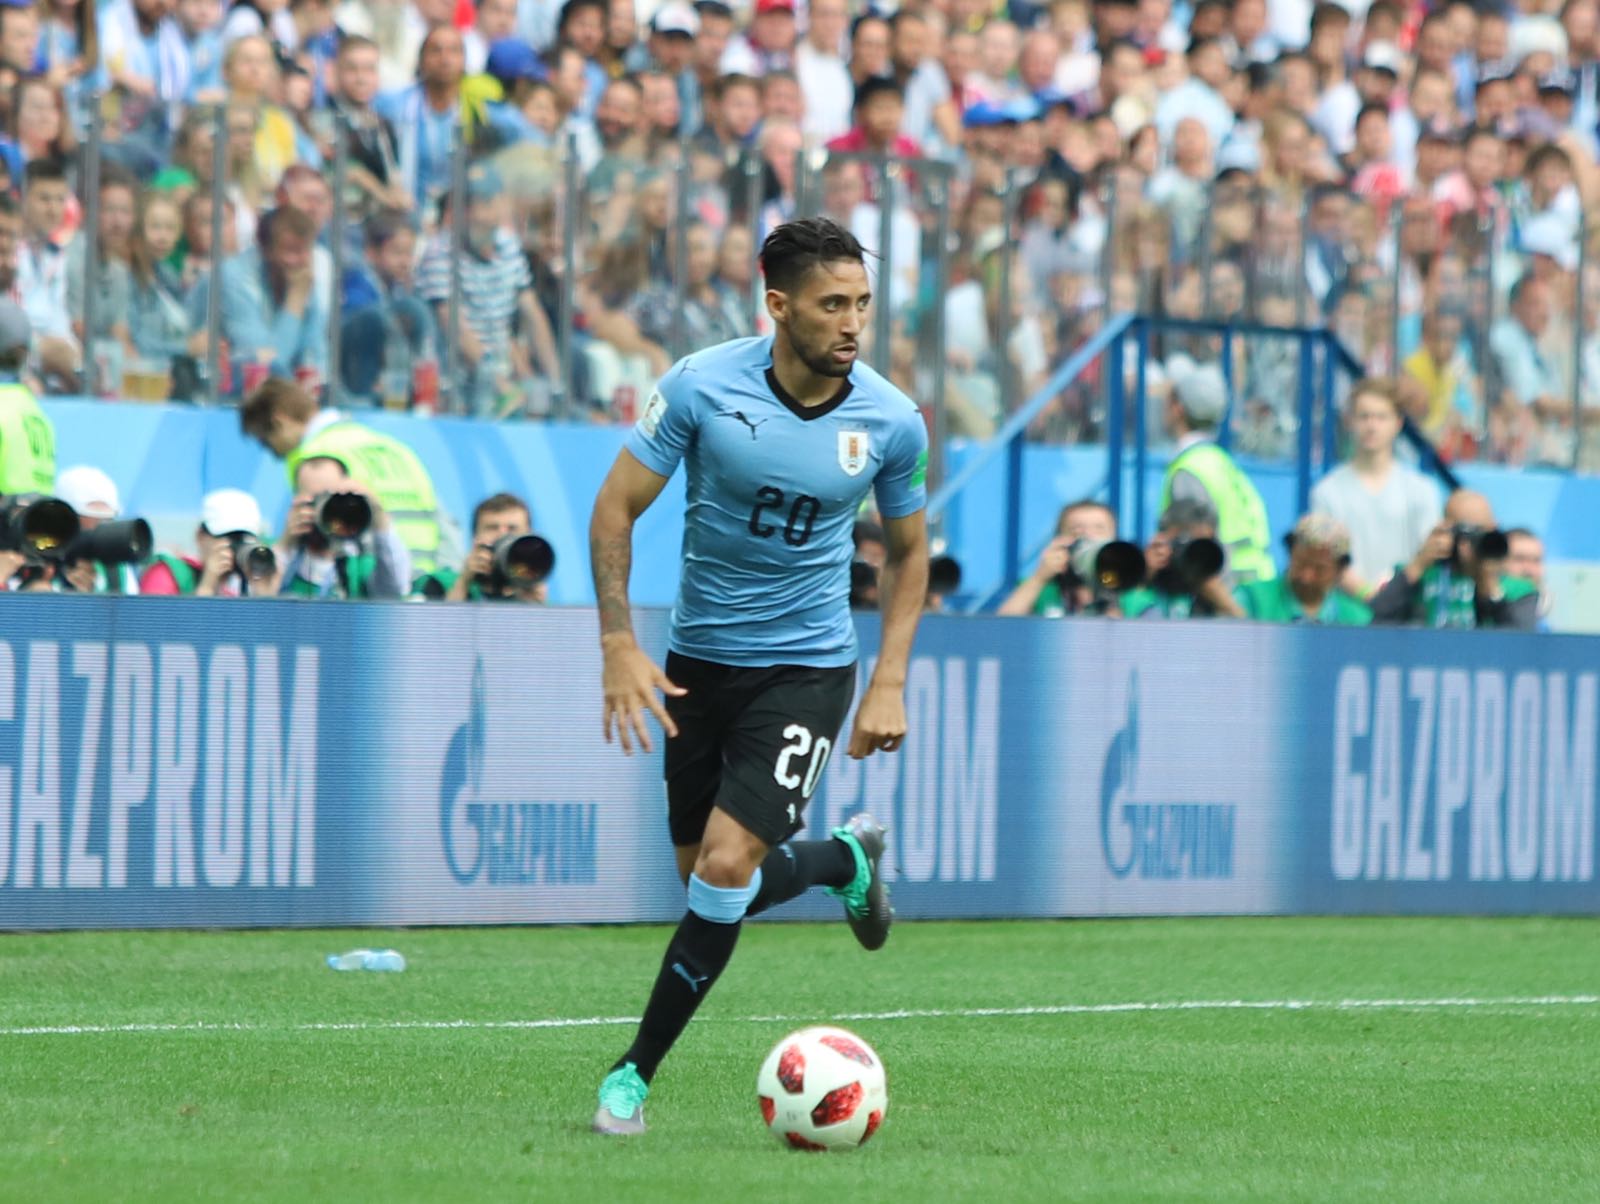 Selección Uruguaya on Twitter: "#URUFRA | futbolista Jonathan Urretaviscaya disputa su primer partido en Copas Mundiales de Fútbol, a nivel de mayores. Van de juego en Nizhny Novgorod. Uruguay